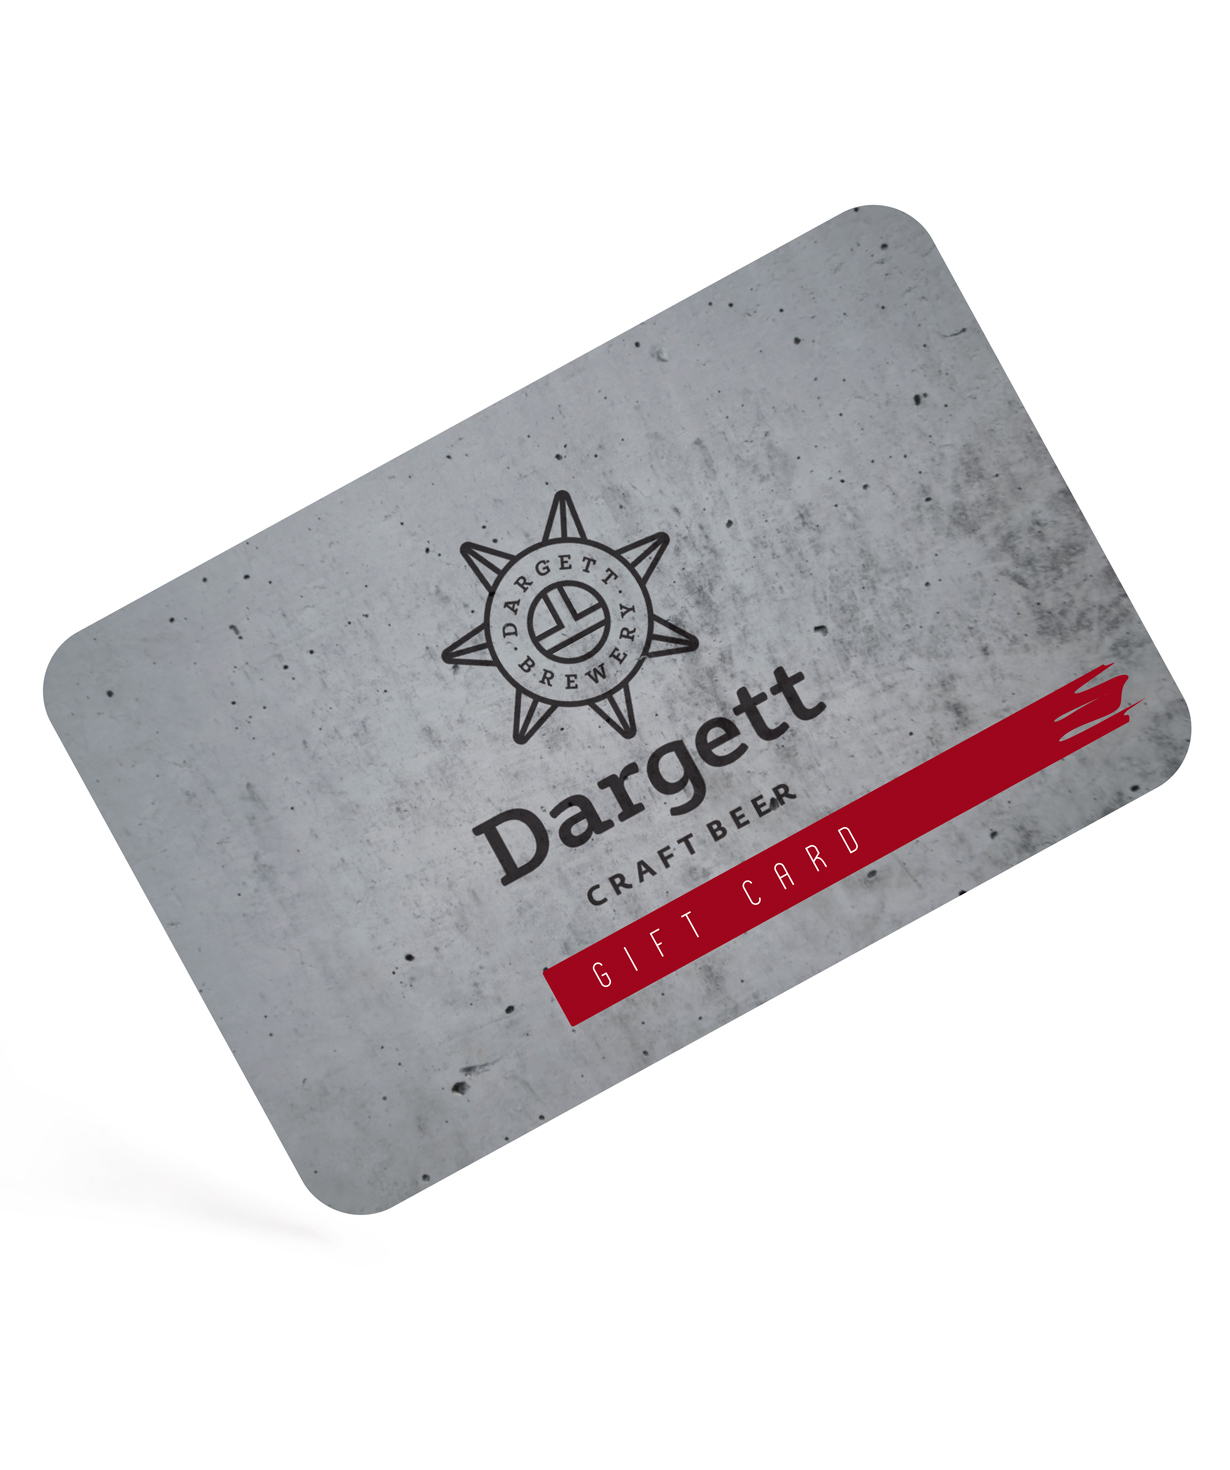 Նվեր-քարտ «Dargett» 45.000